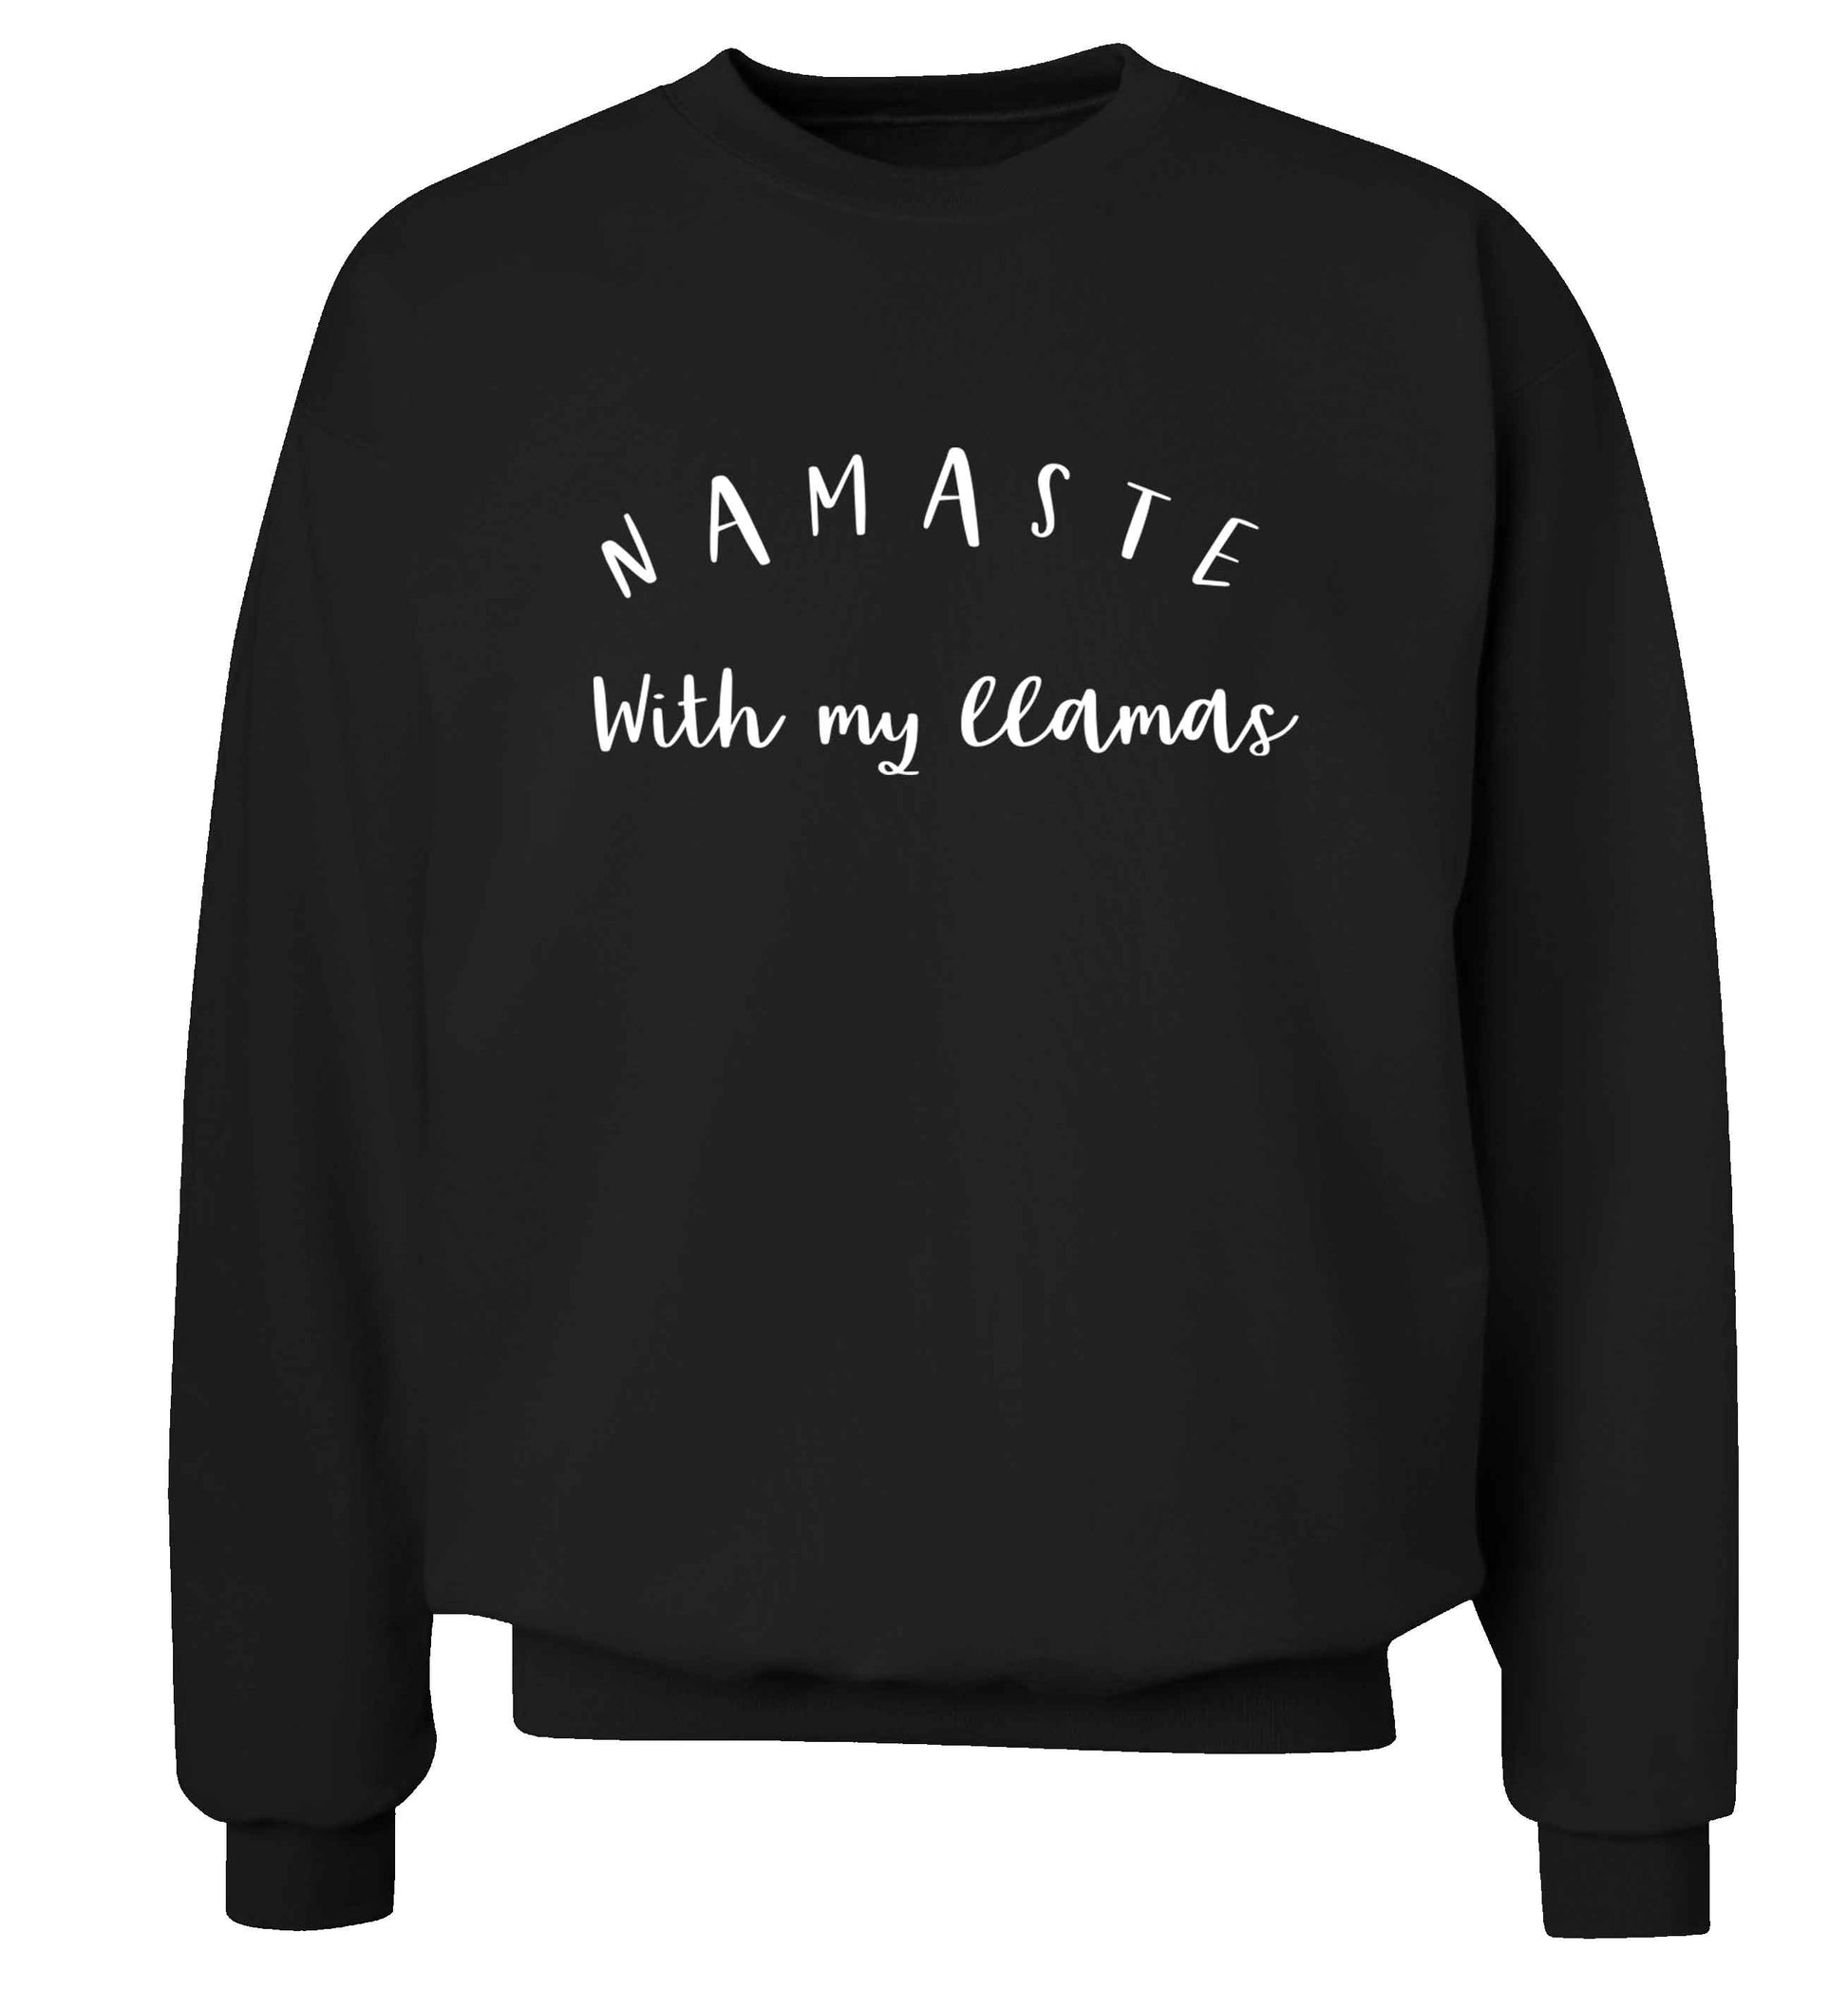 Namaste with my llamas Adult's unisex black Sweater 2XL